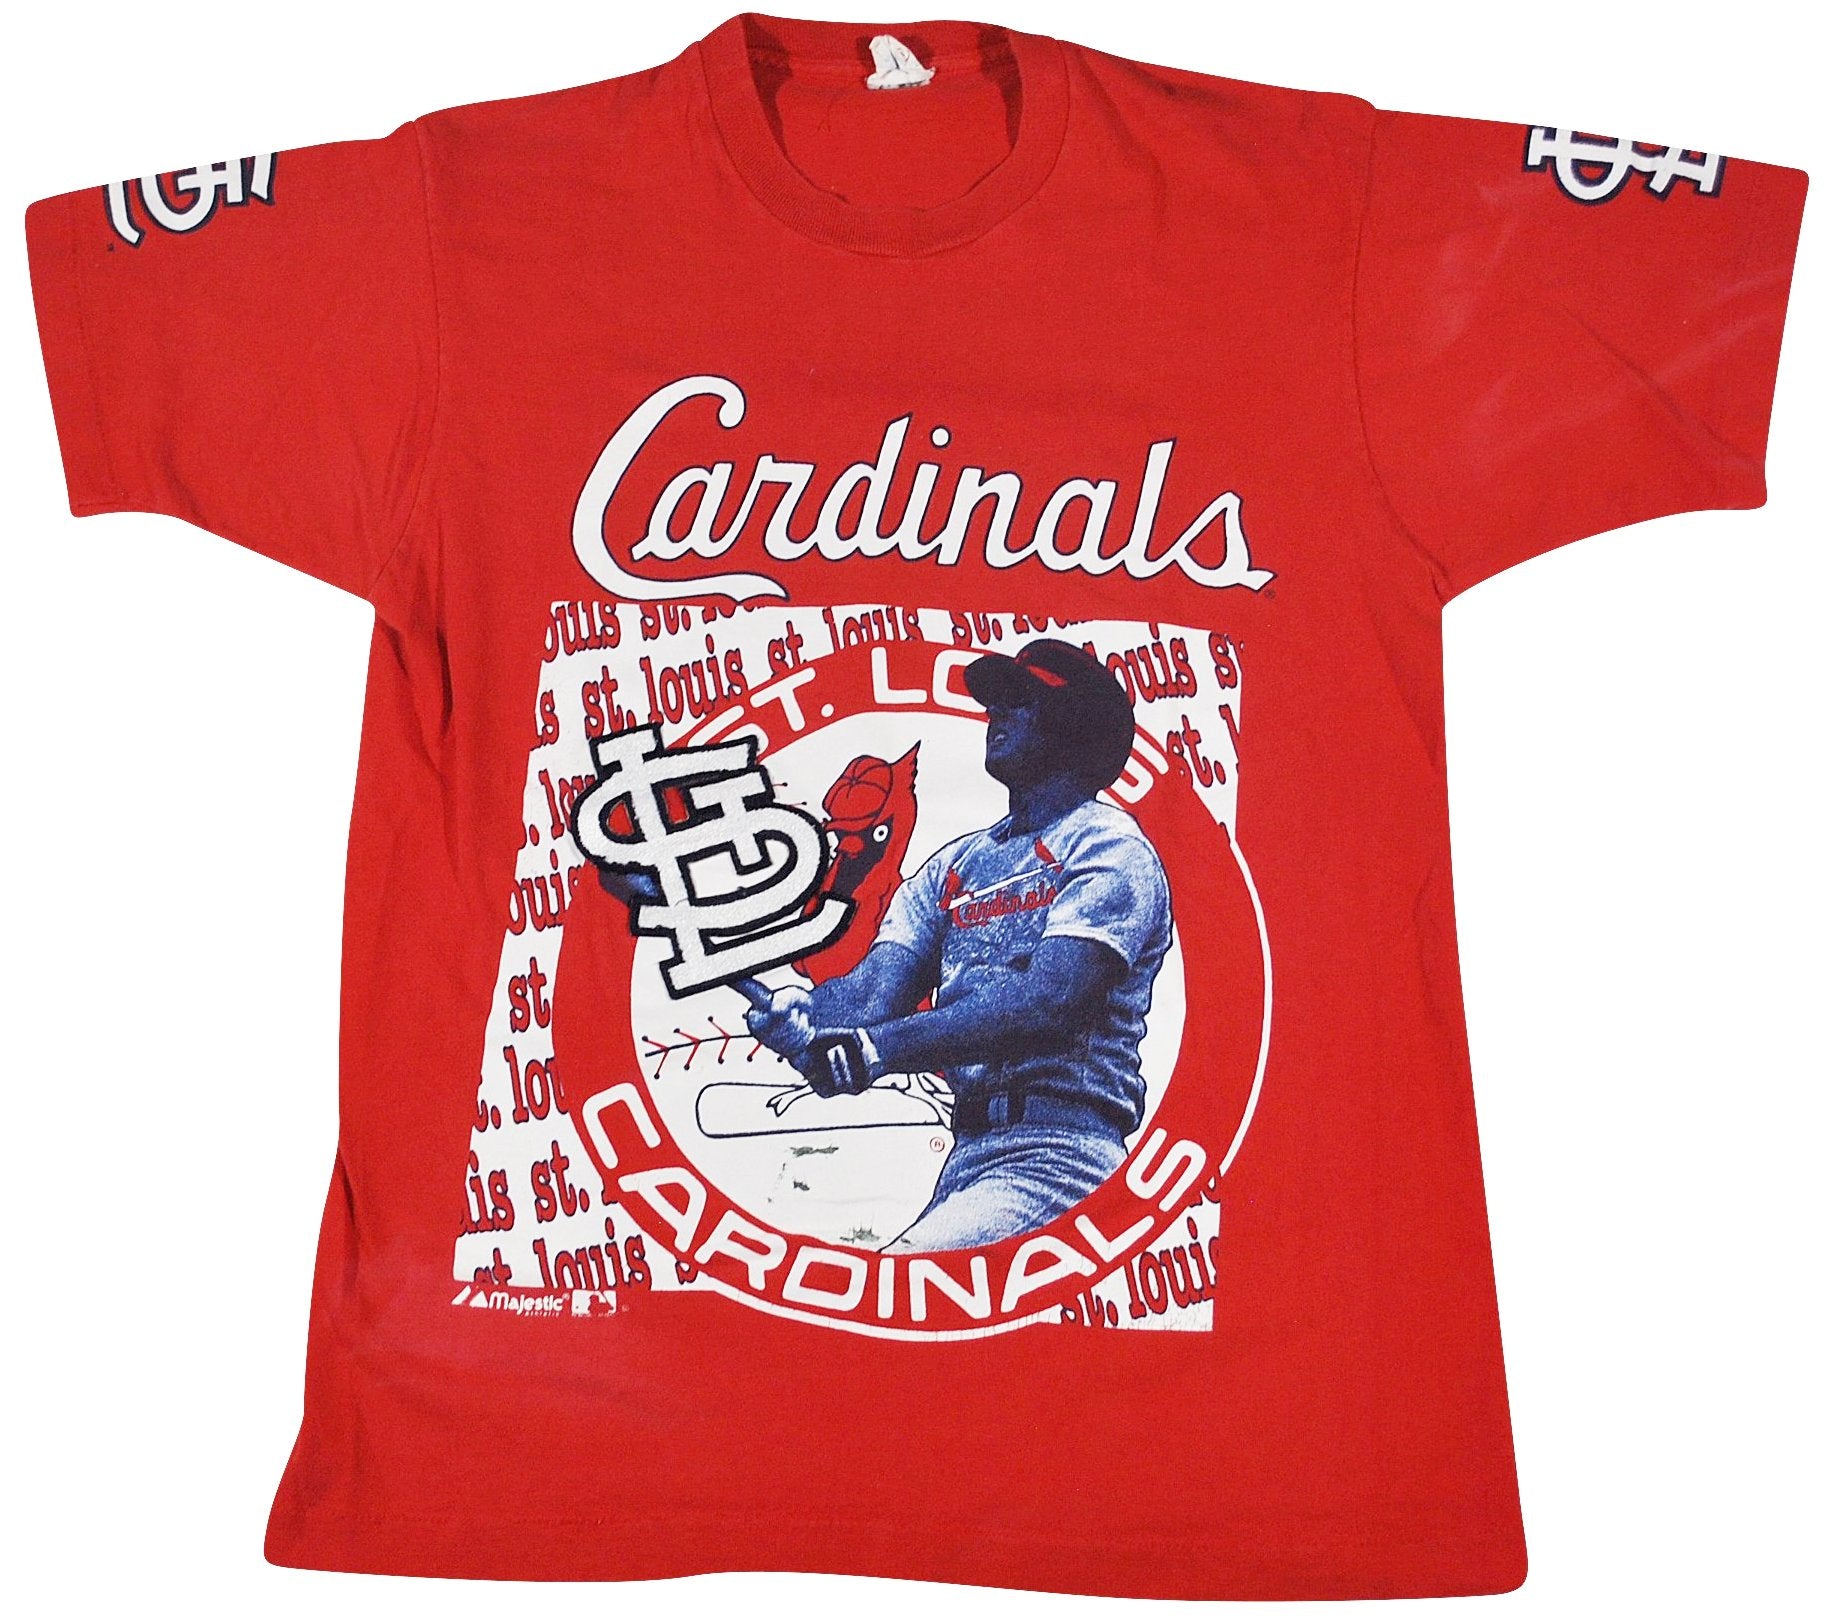 st louis cardinals vintage shirt